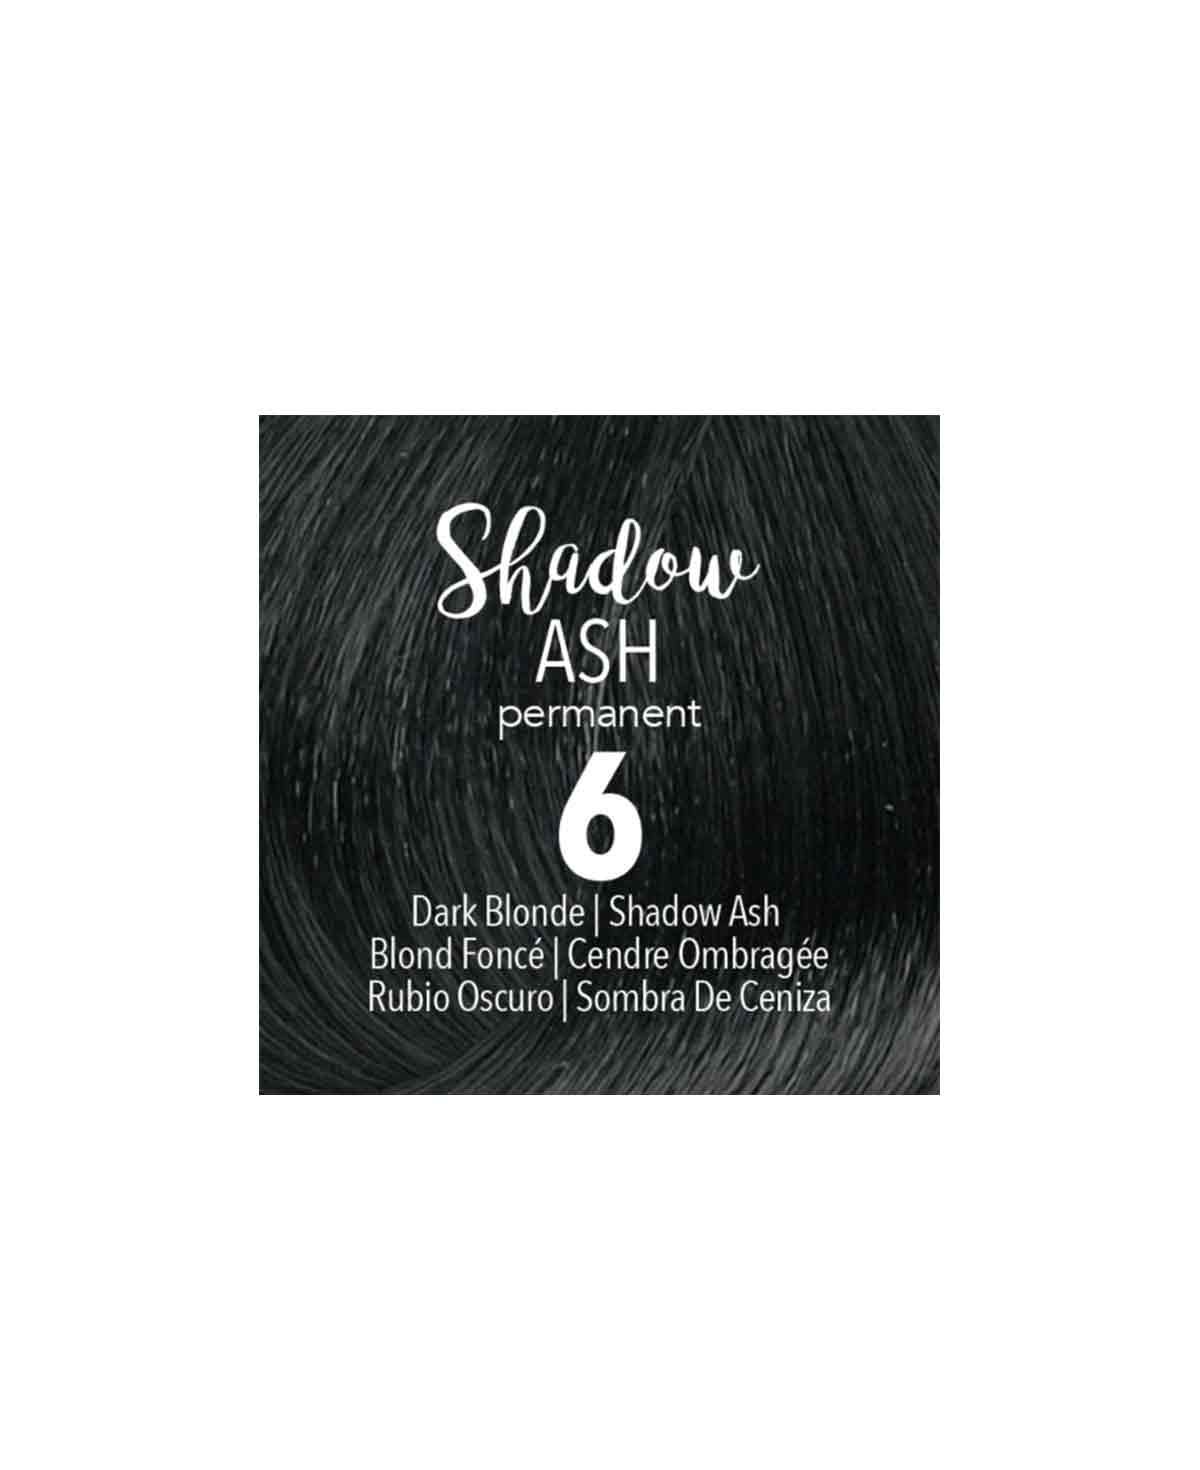 Mydentity - 6 Dark Blonde Shadow Ash